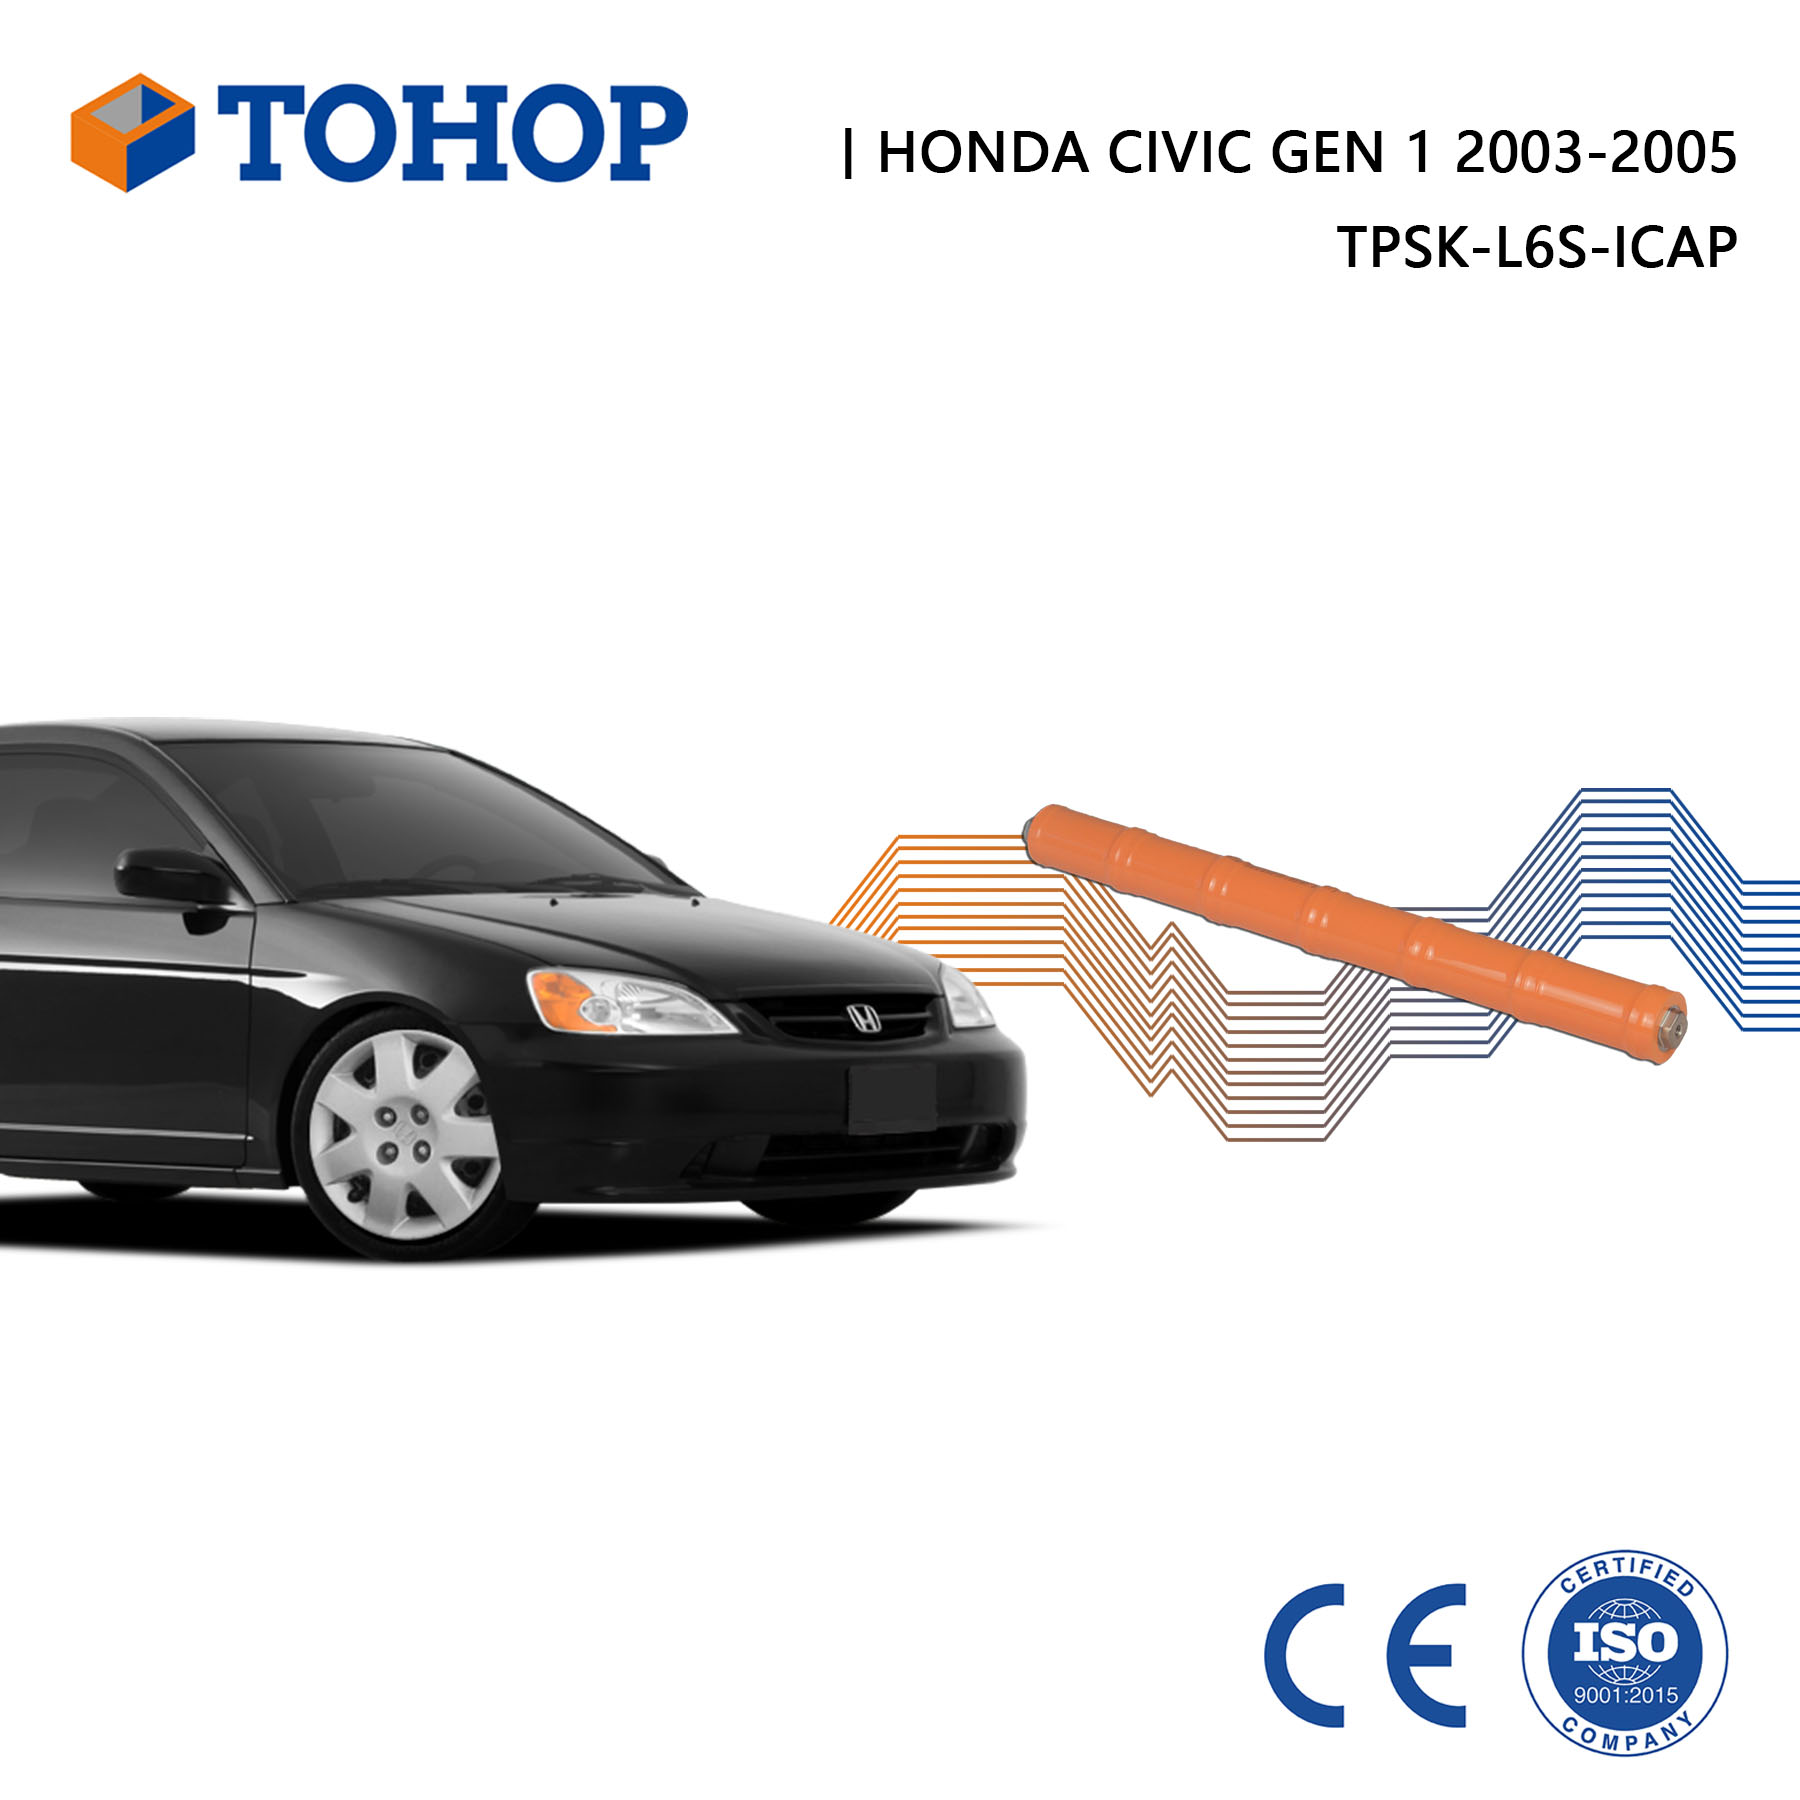 Honda Civic Gen 1 Hybrid Battery 2005 Brand New 7.2V 6.5Ah Hybrid Battery Cell